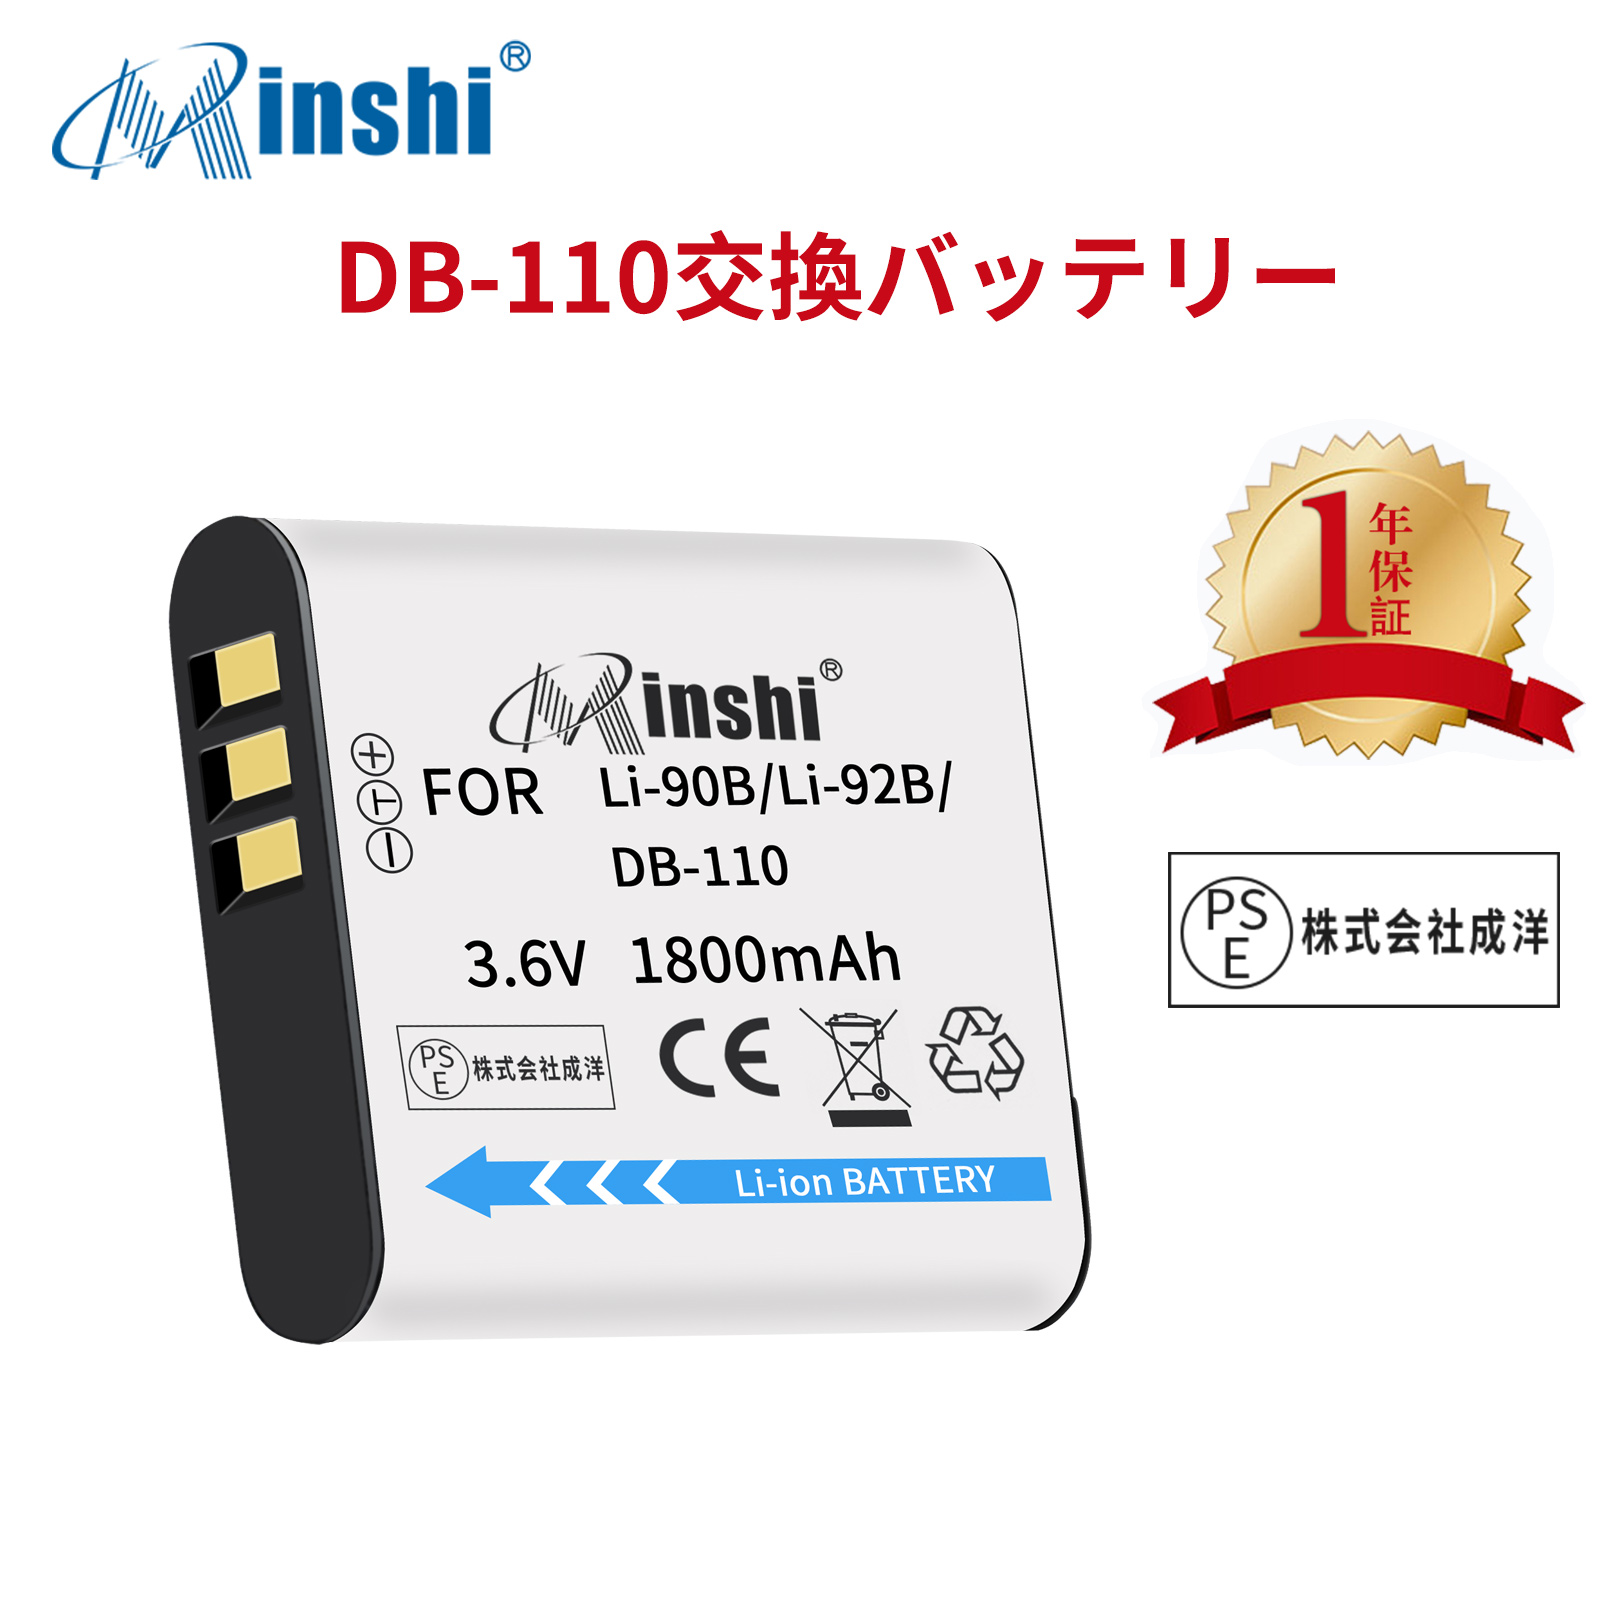 【1年保証】minshi OLYMPUS Stylus SH-3 【1800mAh 3.6V】PSE認定済 高品質LI-92B互換バッテリーWHG